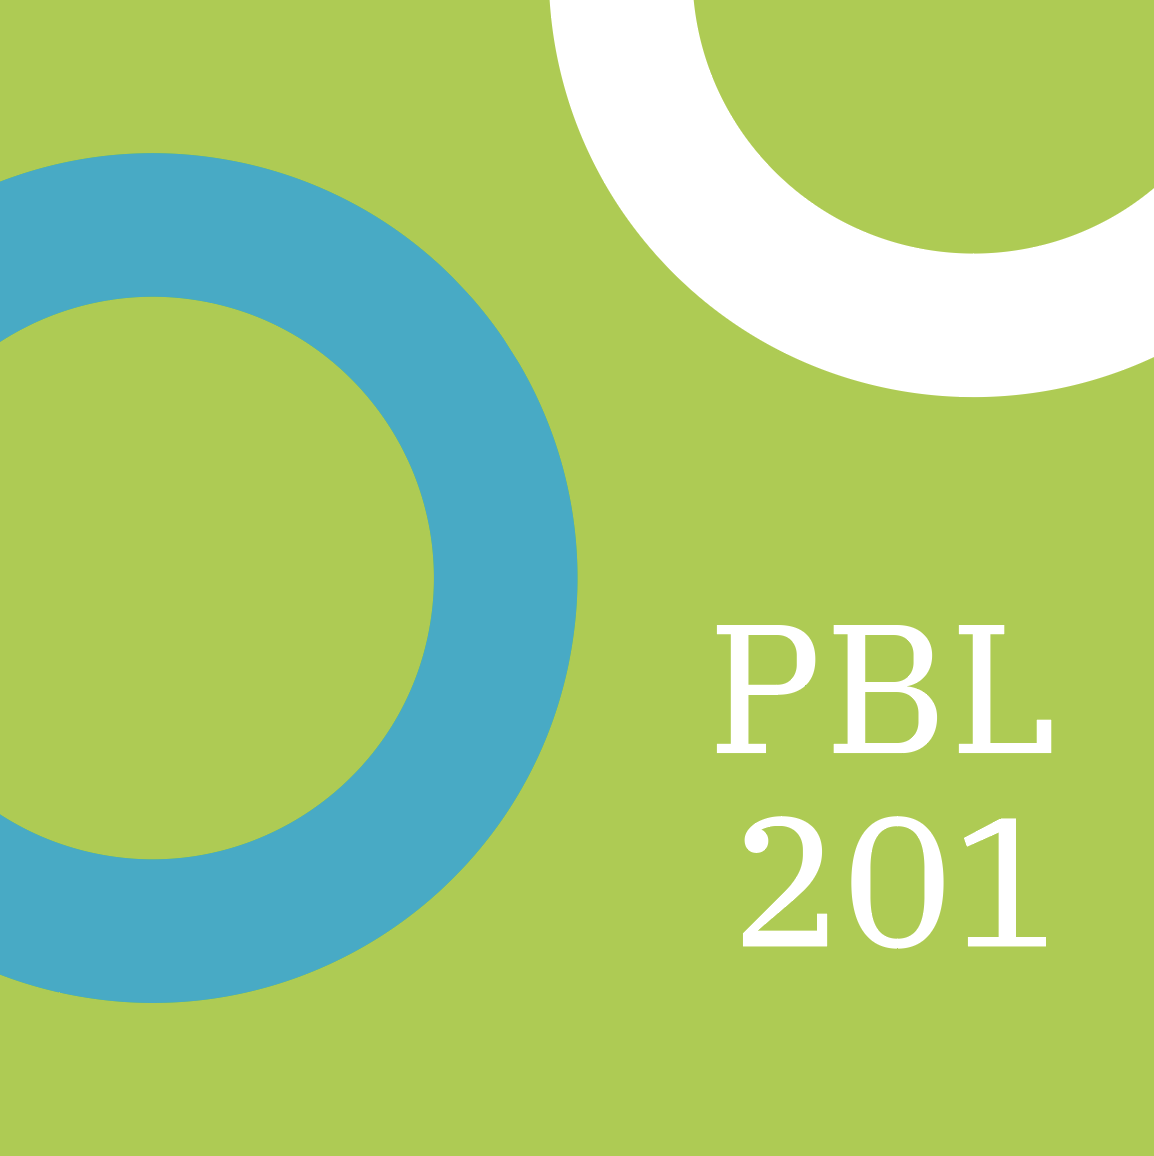 PBL 201